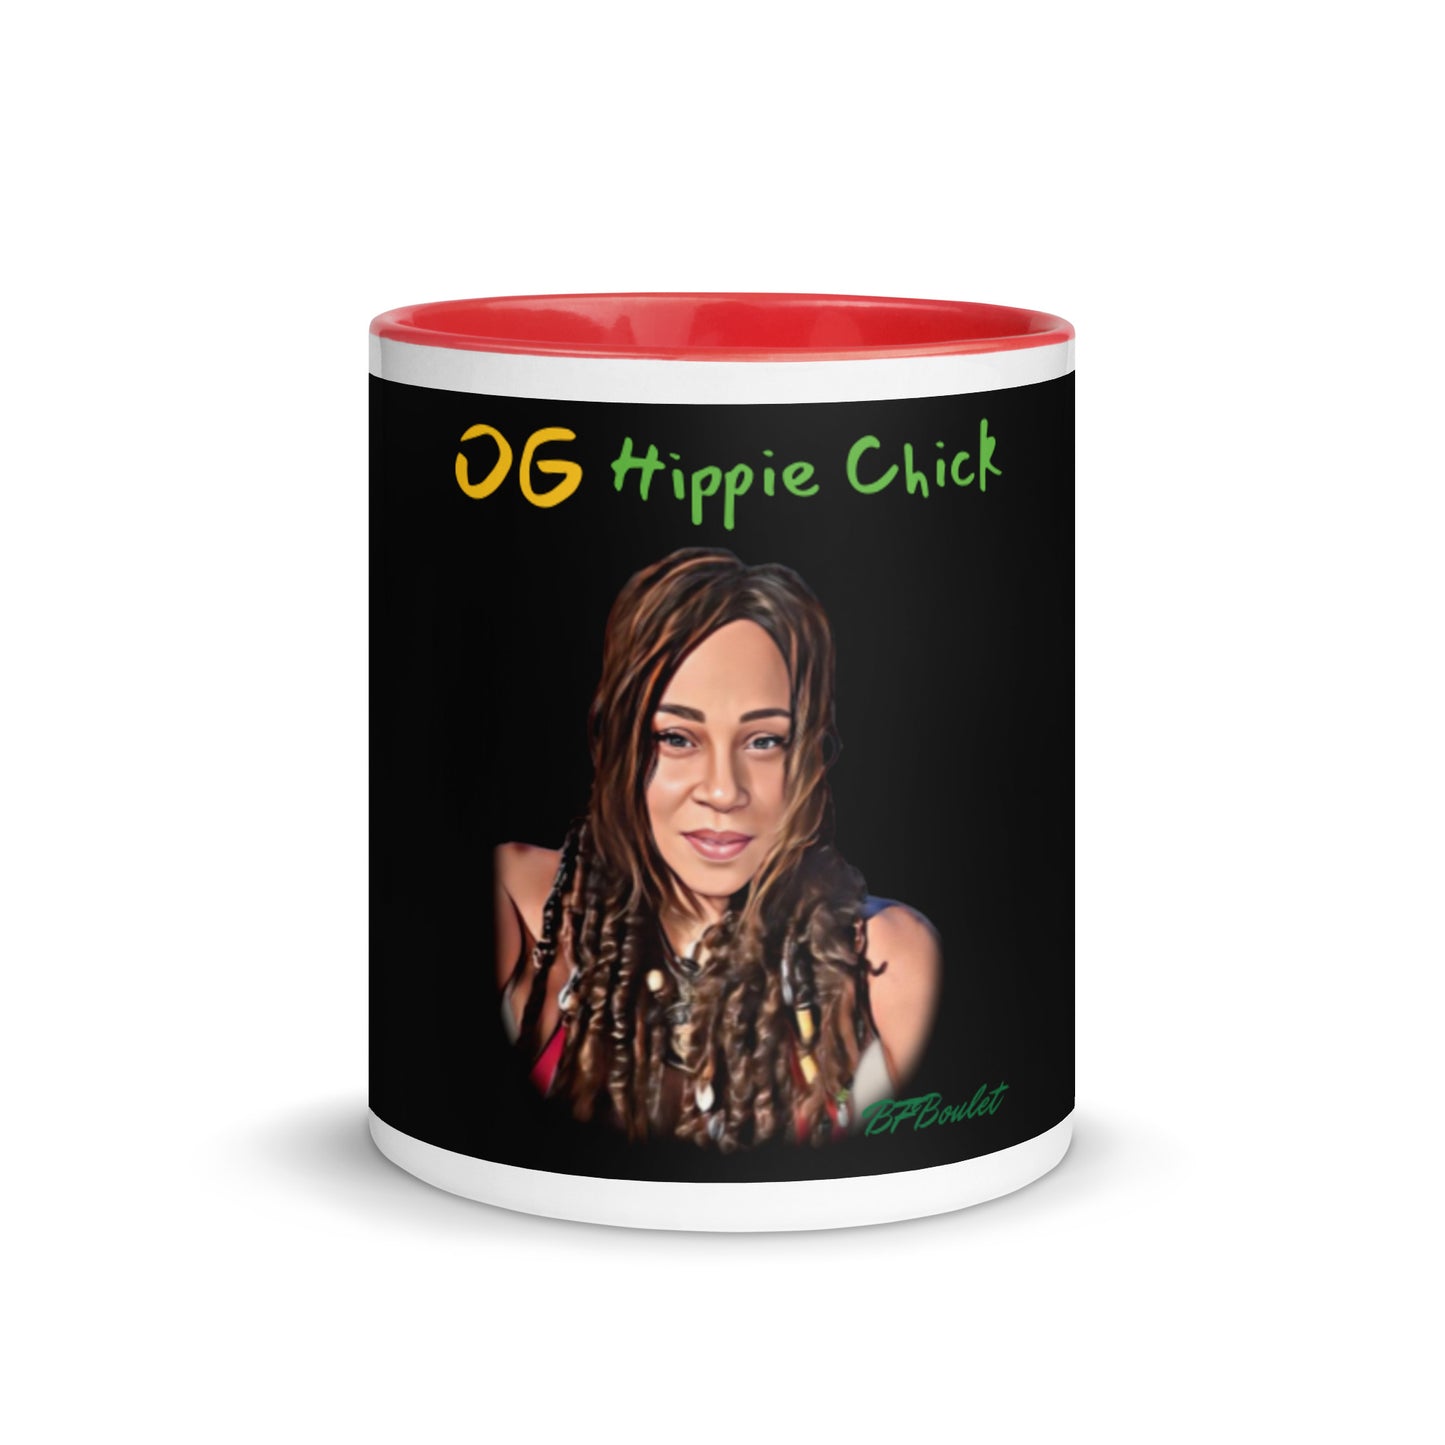 Black Color Mug - OG Hippie Chick (BFBoulet)